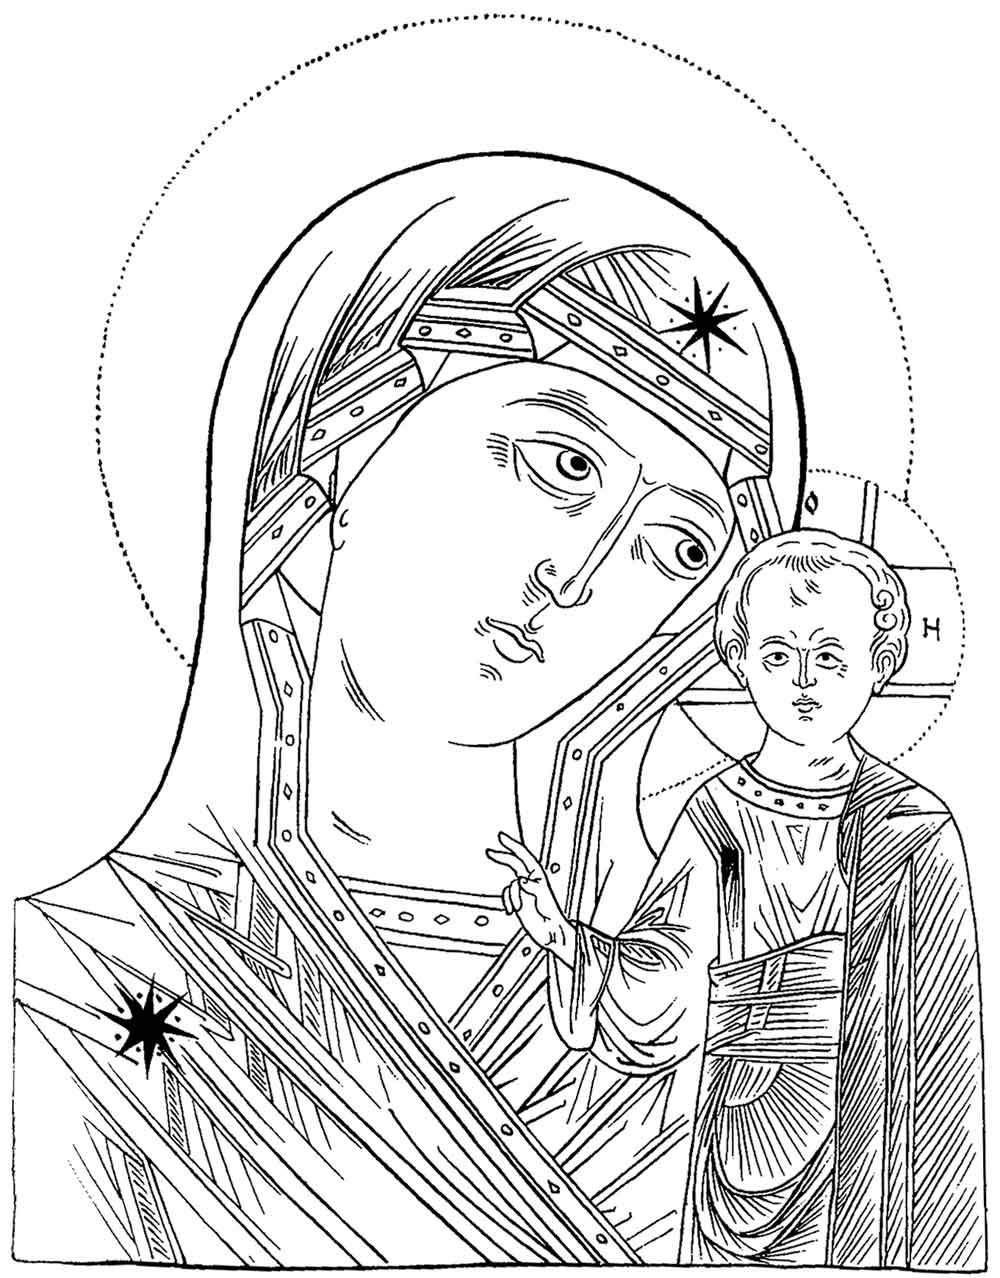 Прорись иконы Казанской Божьей матери